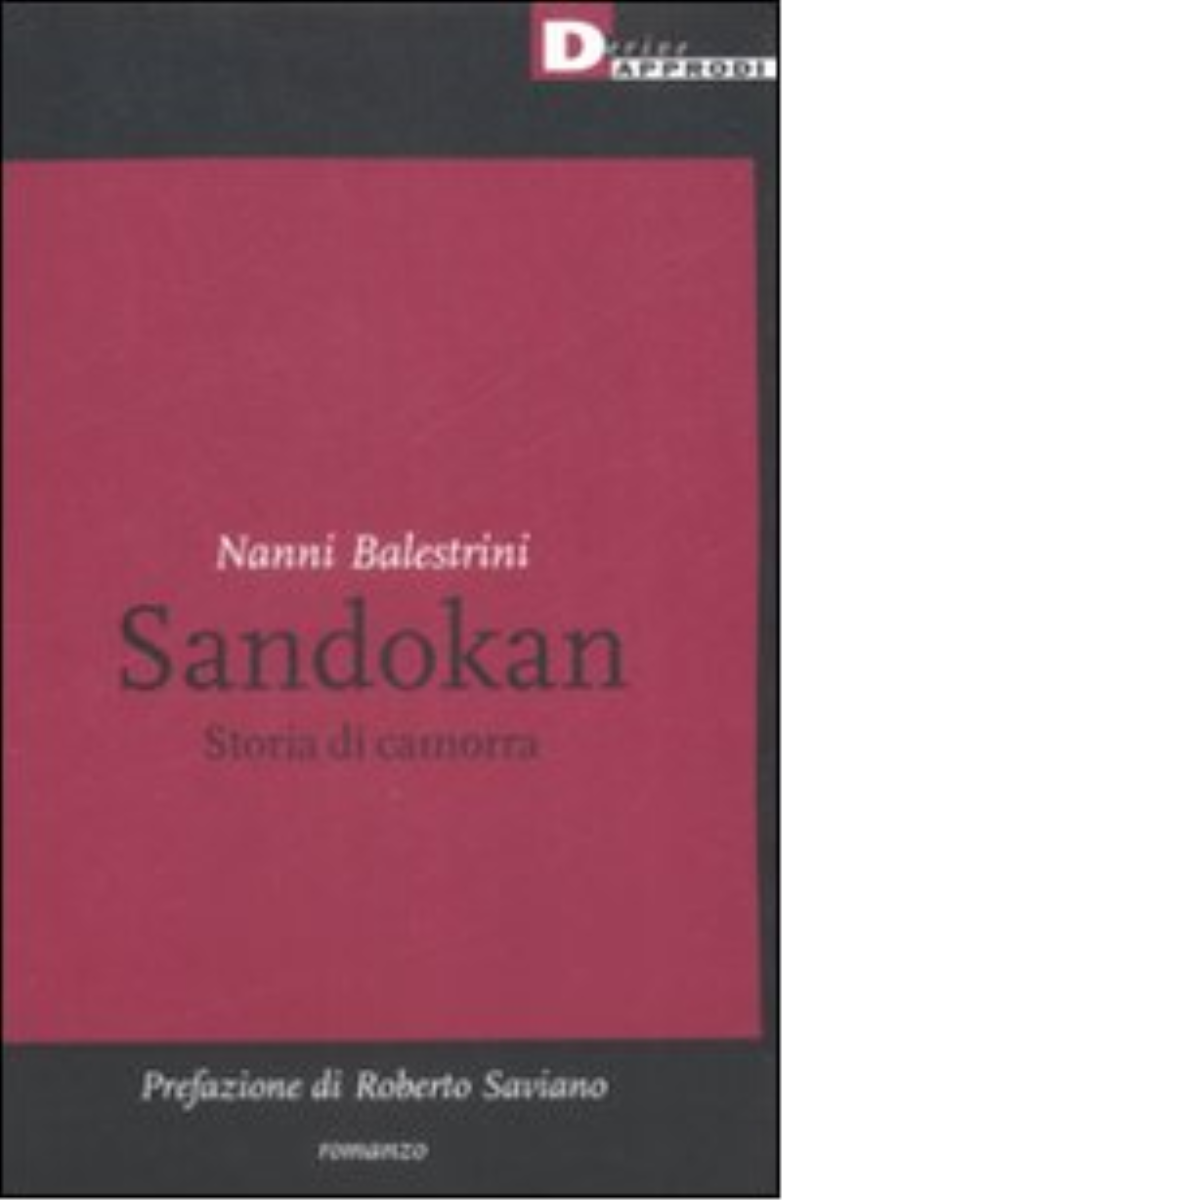 SANDOKAN. STORIA DI CAMORRA di NANNI BALESTRINI - DeriveApprodi editore,2007 libro usato